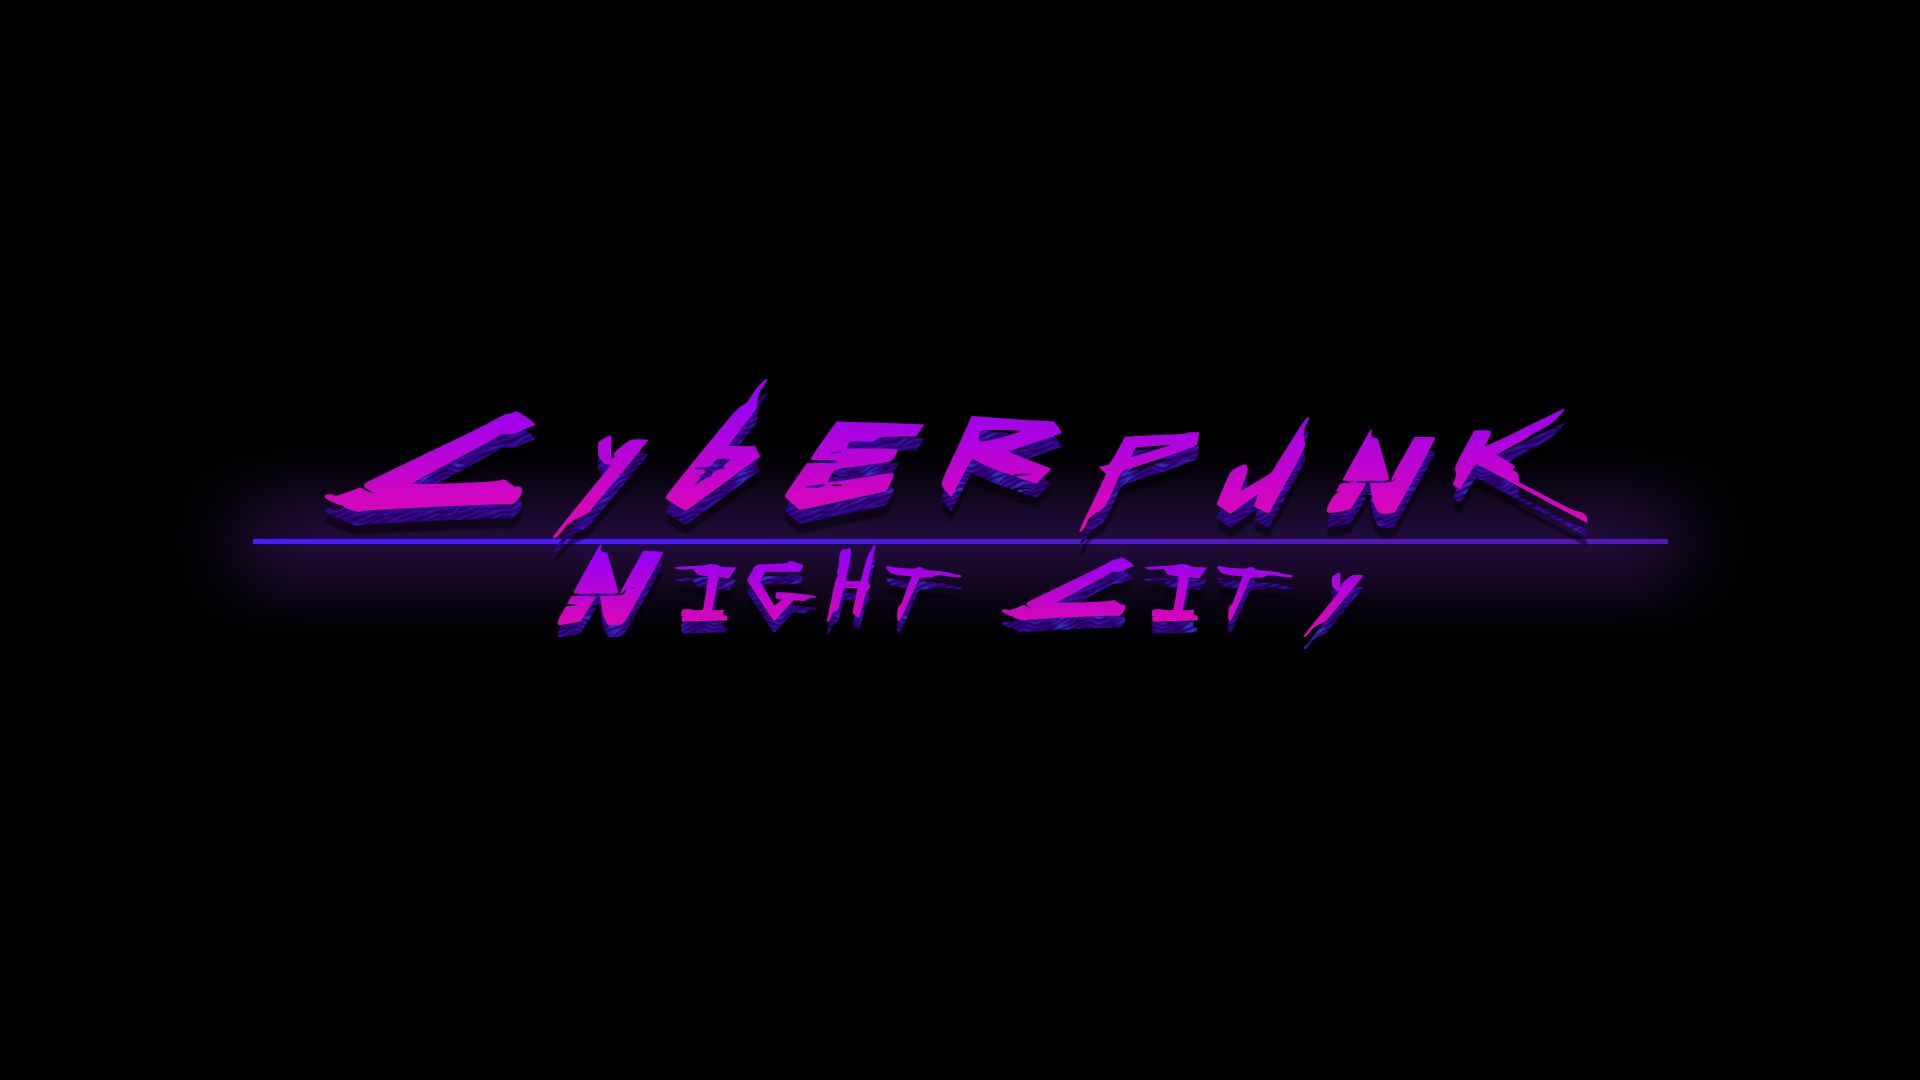 Cyberpunk png картинки фото 94